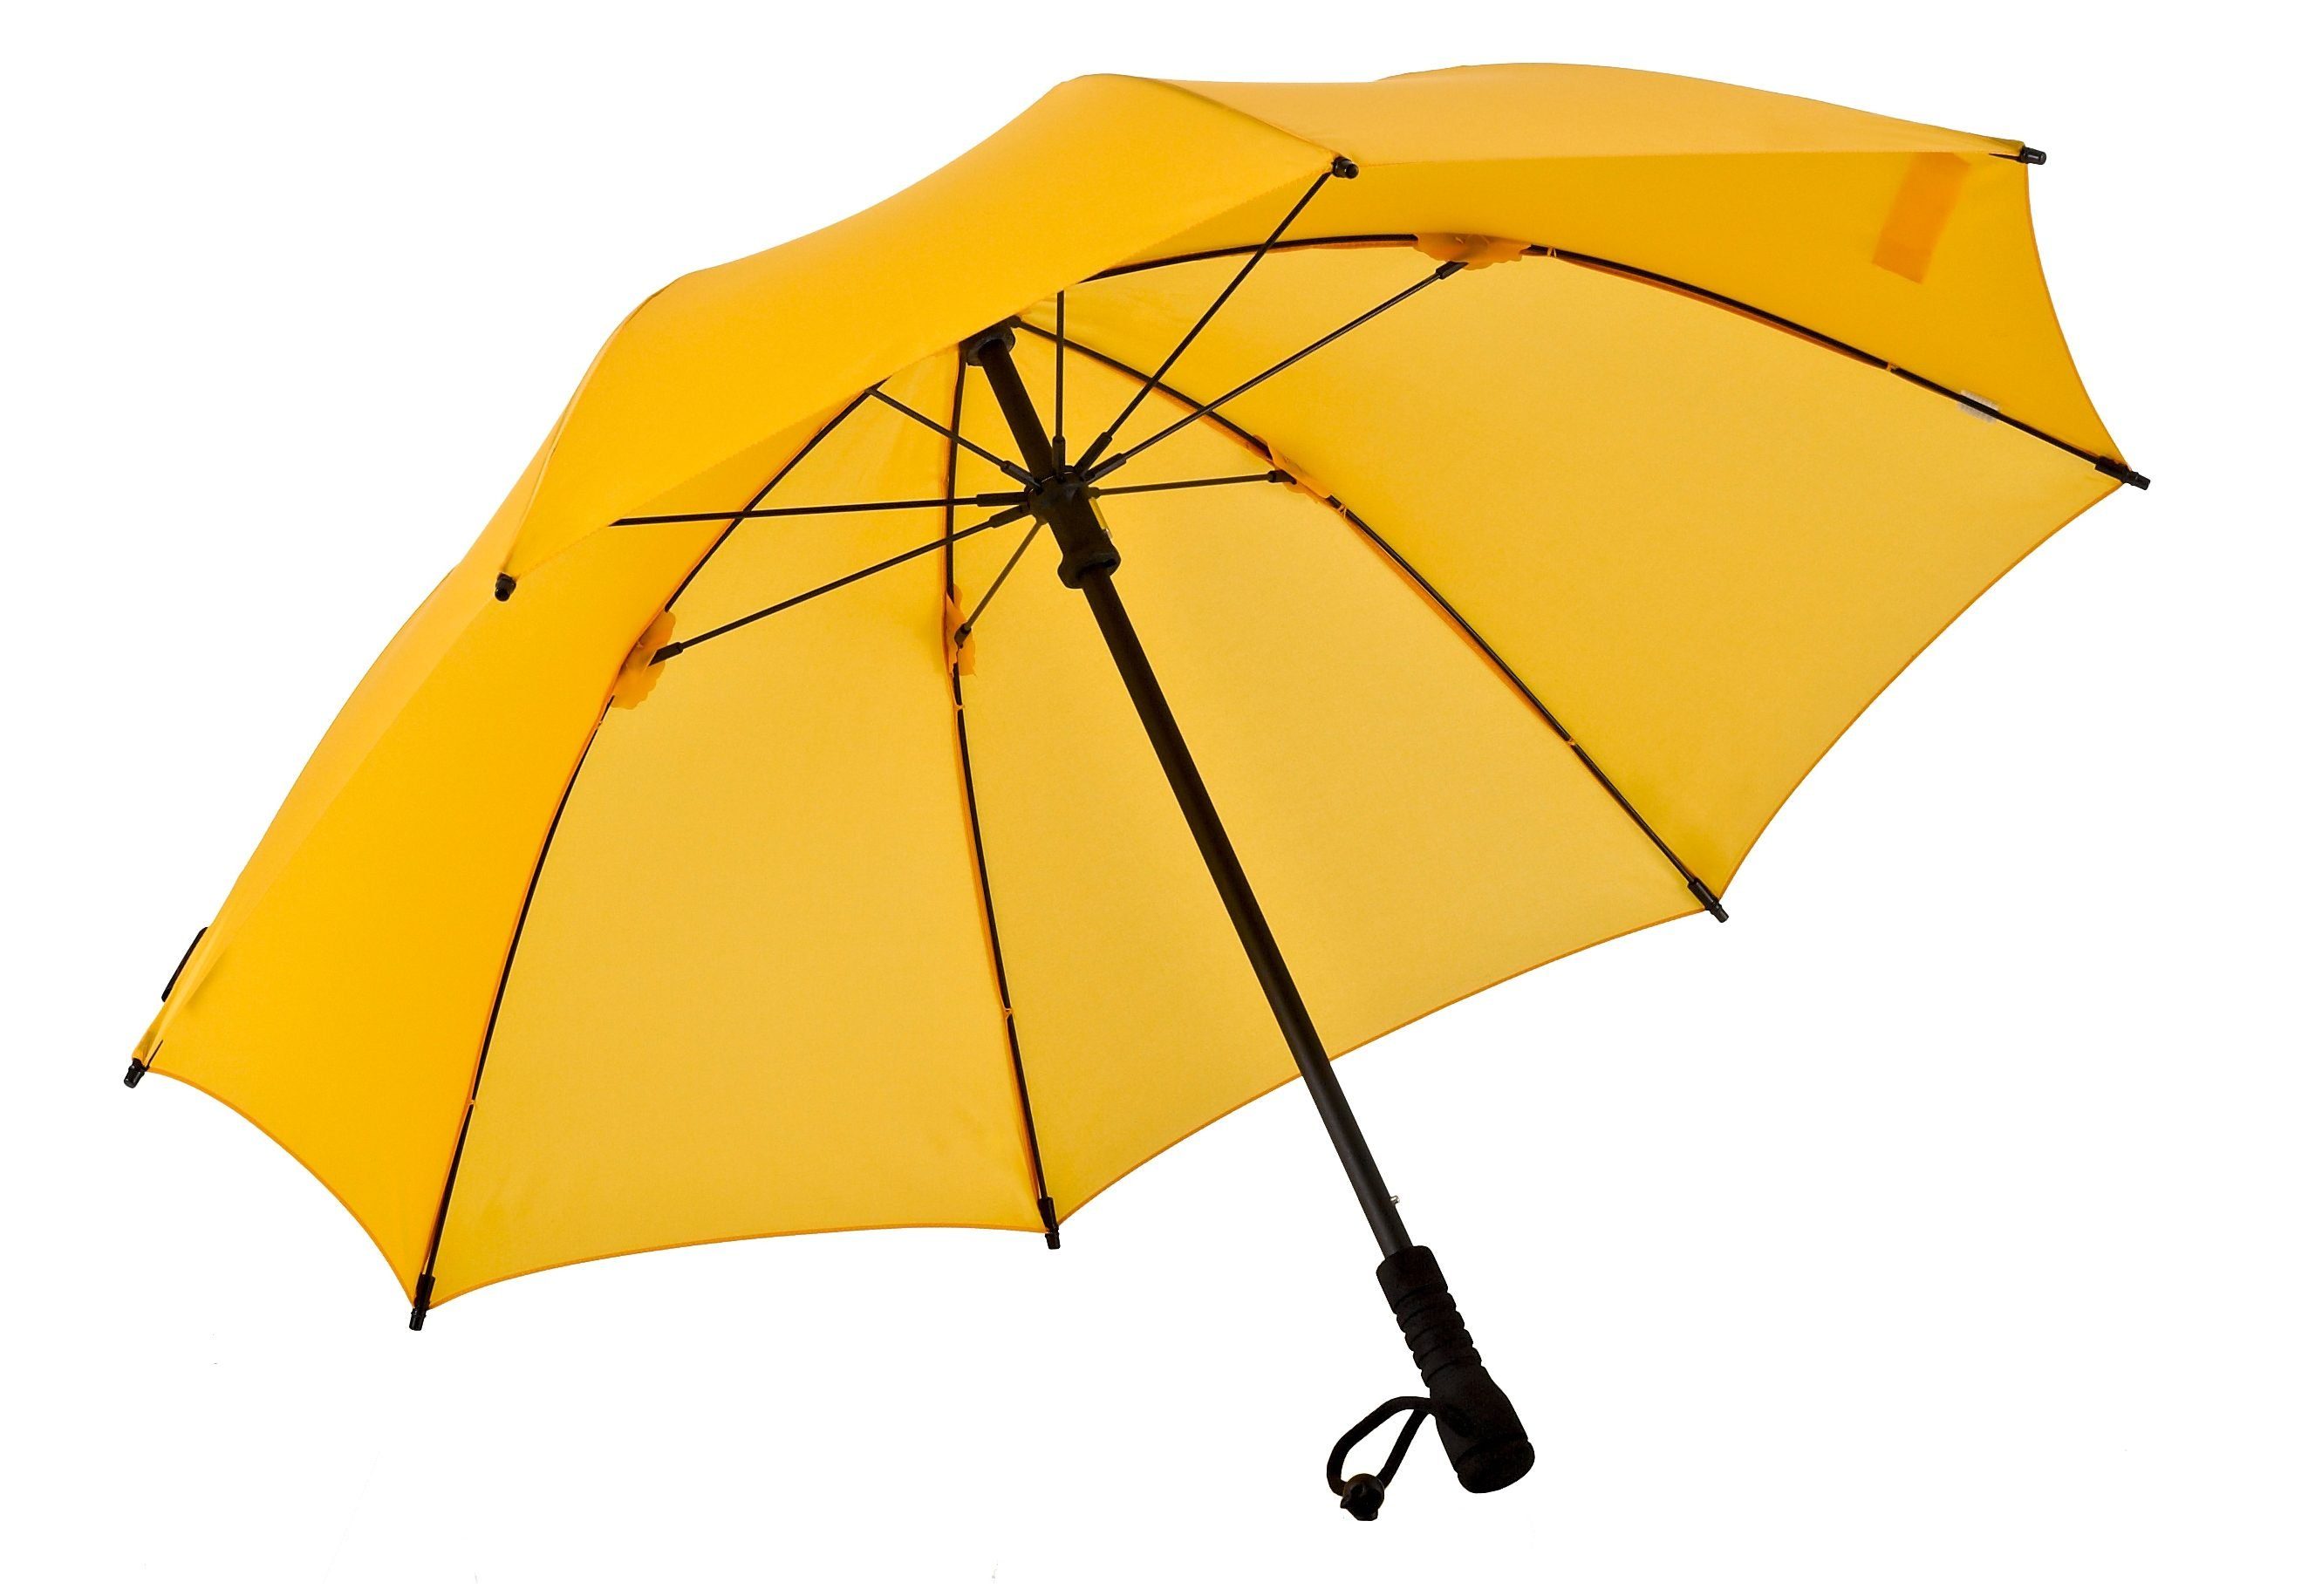 Stockregenschirm gelb EuroSCHIRM® Swing